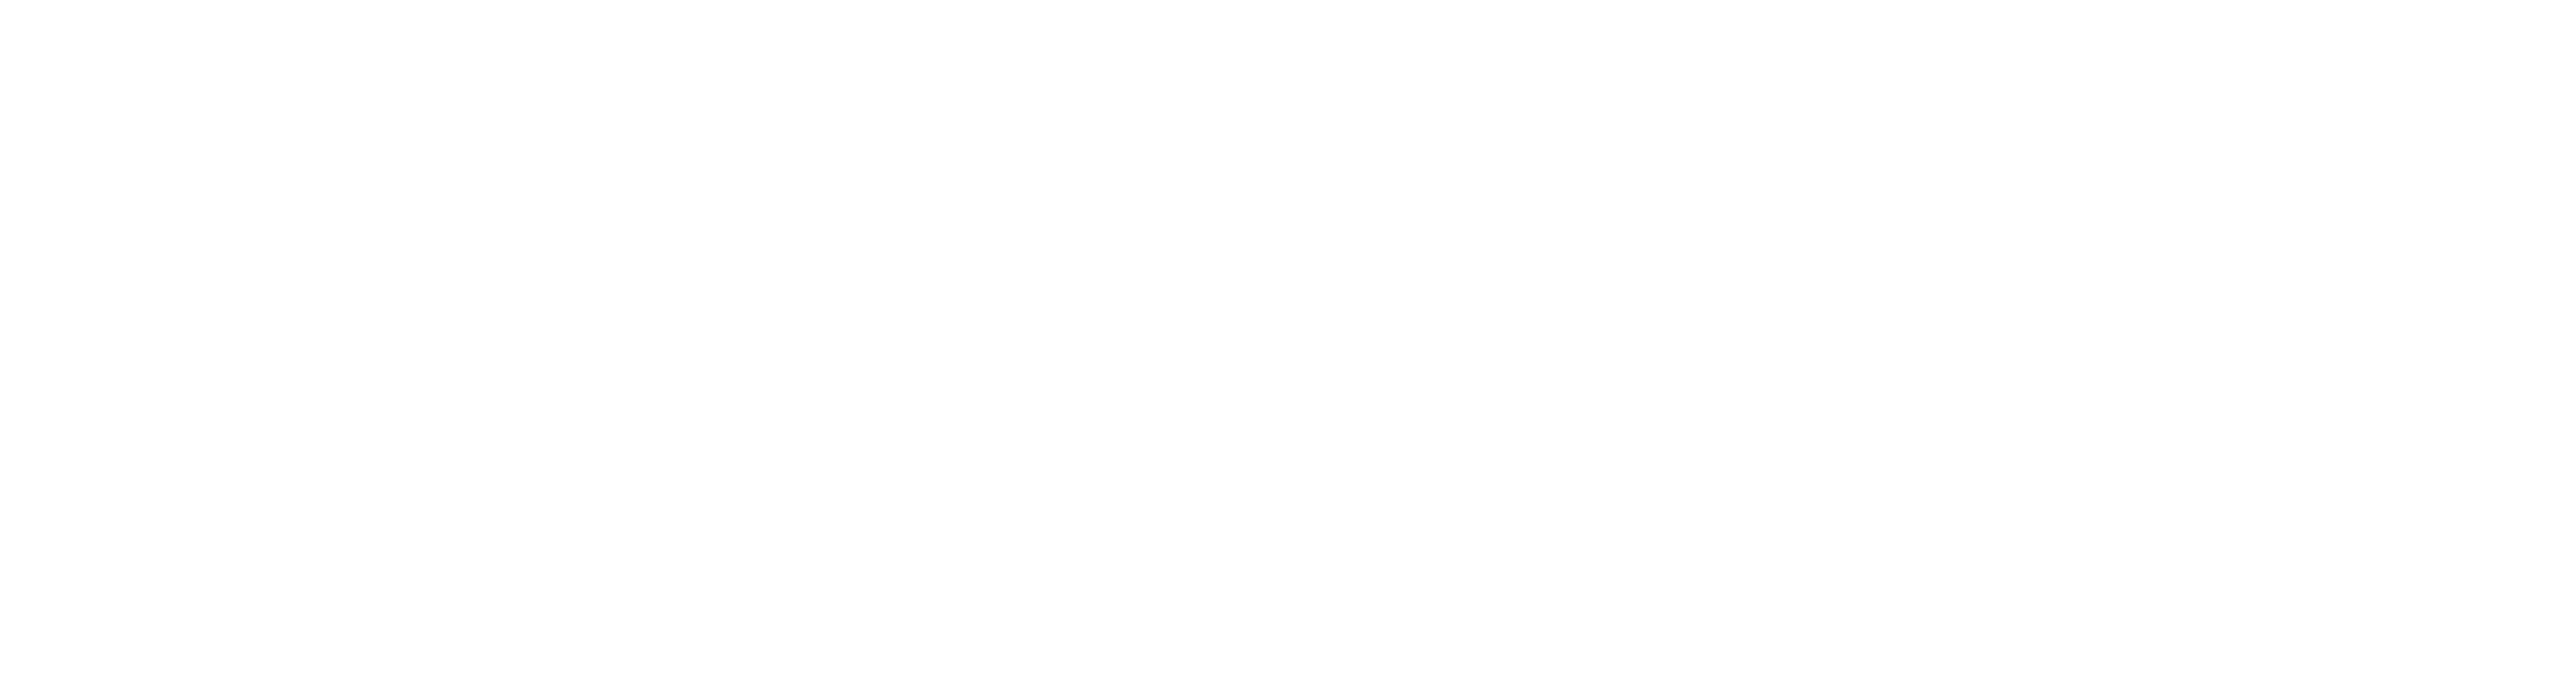 Evine Logo - Evine After Dark | Evine